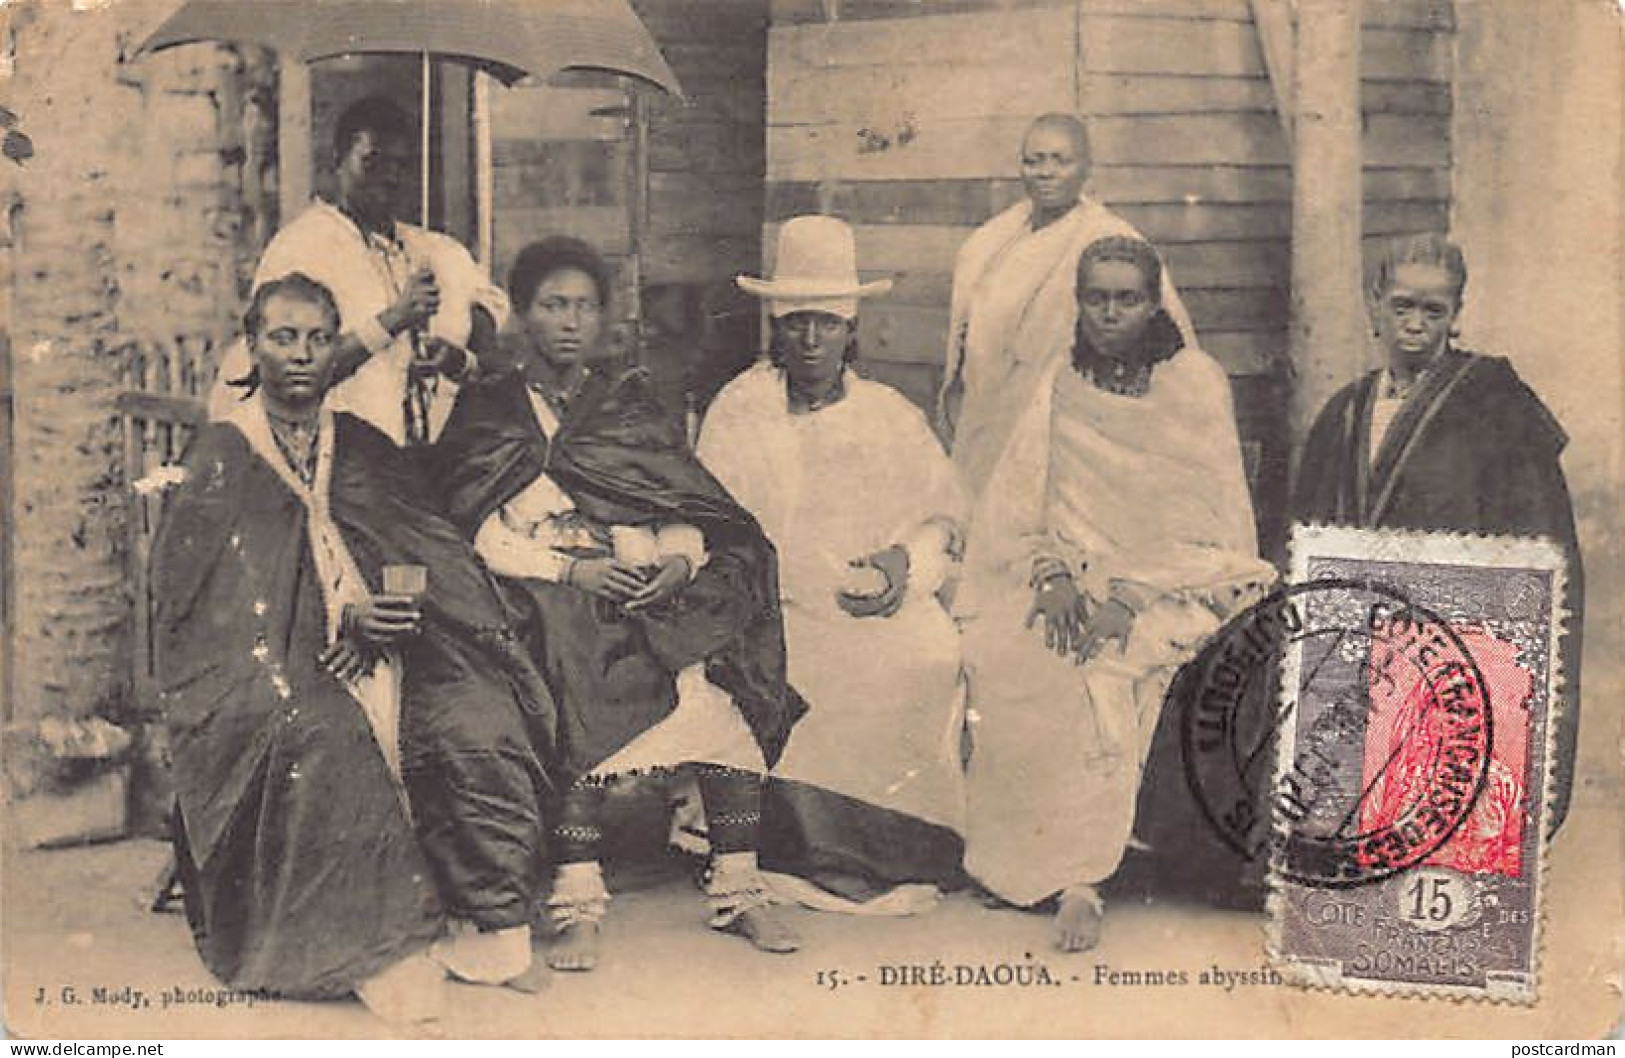 Ethiopia - DIRE DAWA - Abyssinian Women - Publ. J. G. Mody 15 - Etiopía